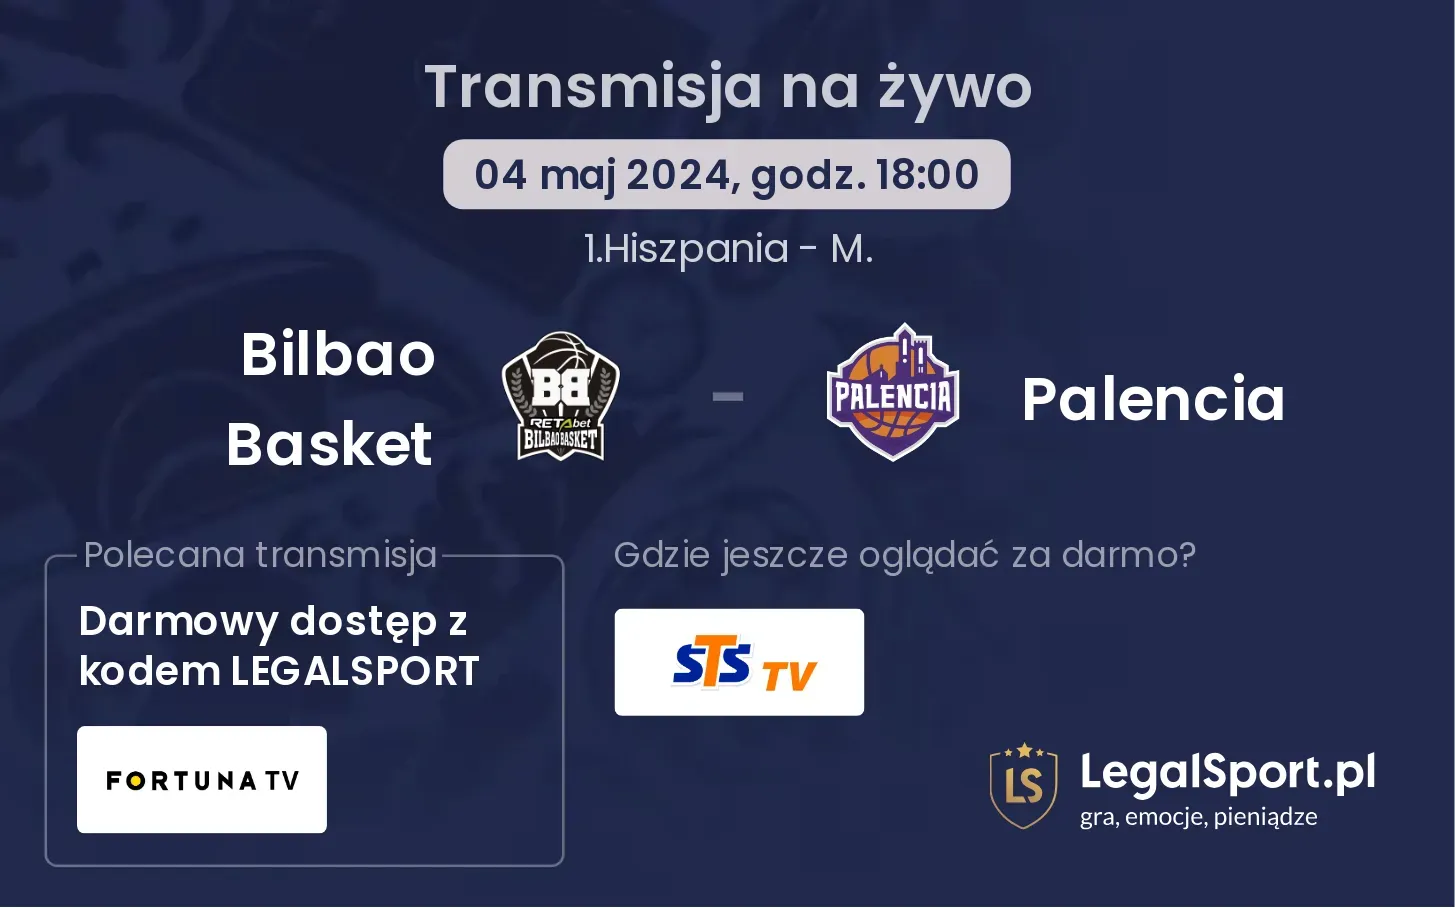 Bilbao Basket - Palencia transmisja na żywo